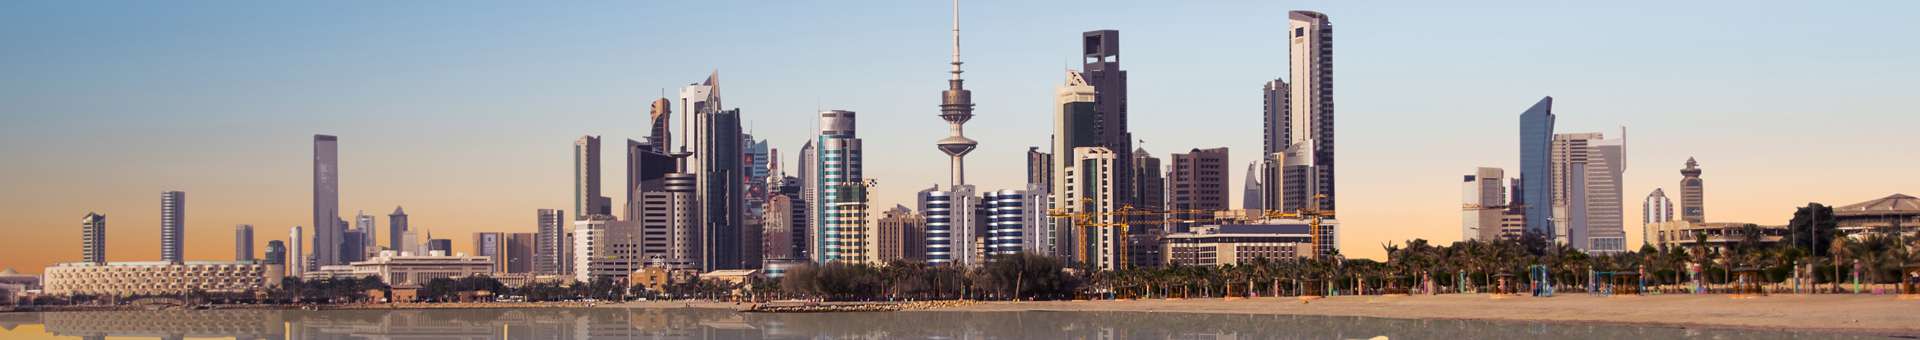 Búsqueda de información Whois de nombres de dominios en Kuwait